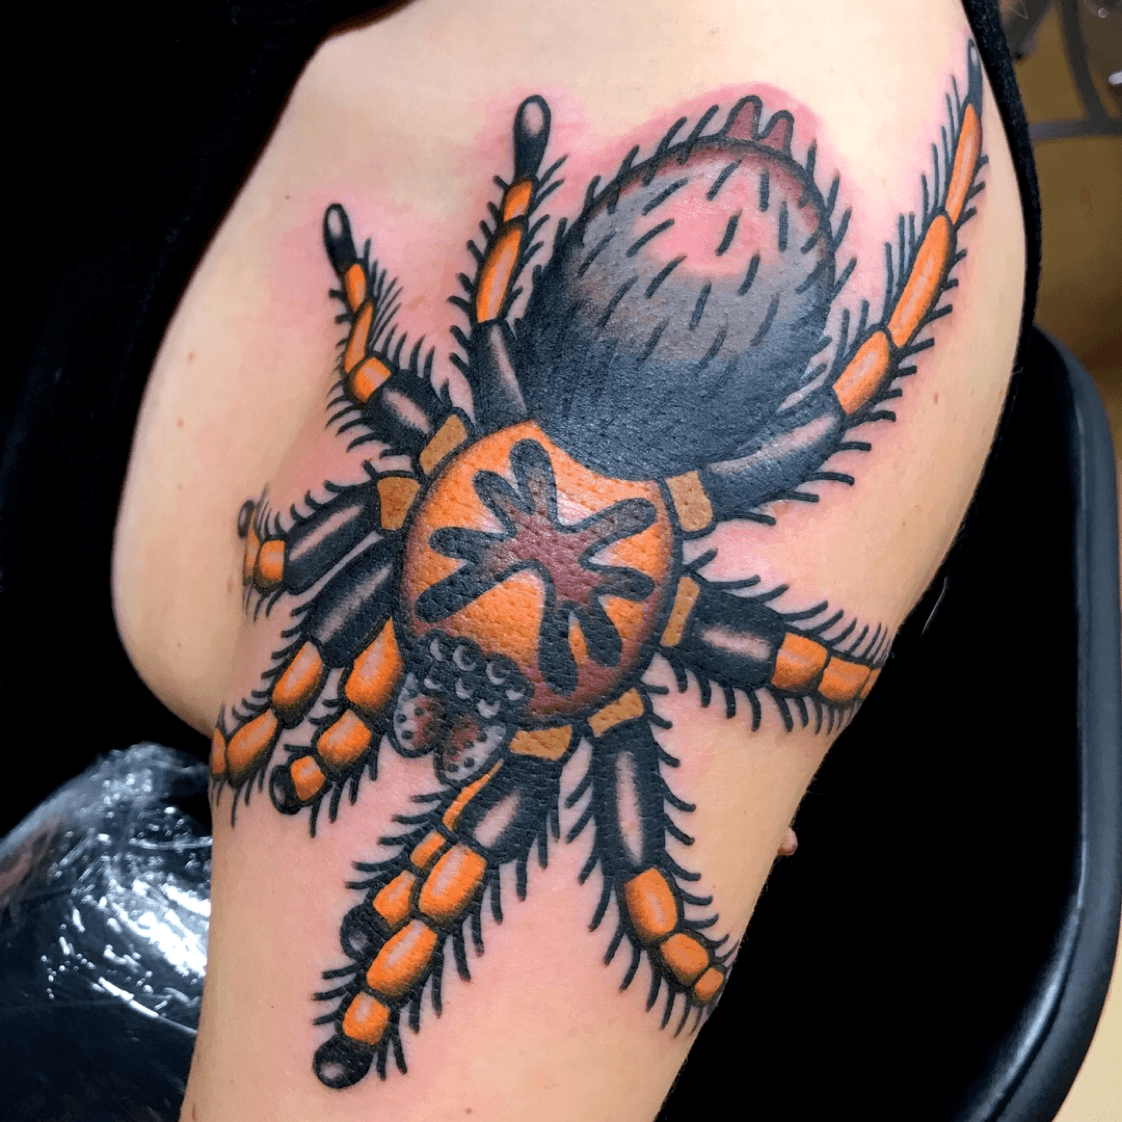 Silver Ant Tattoo  Blackwork Tarantula Spider tattooed by Jax  Facebook